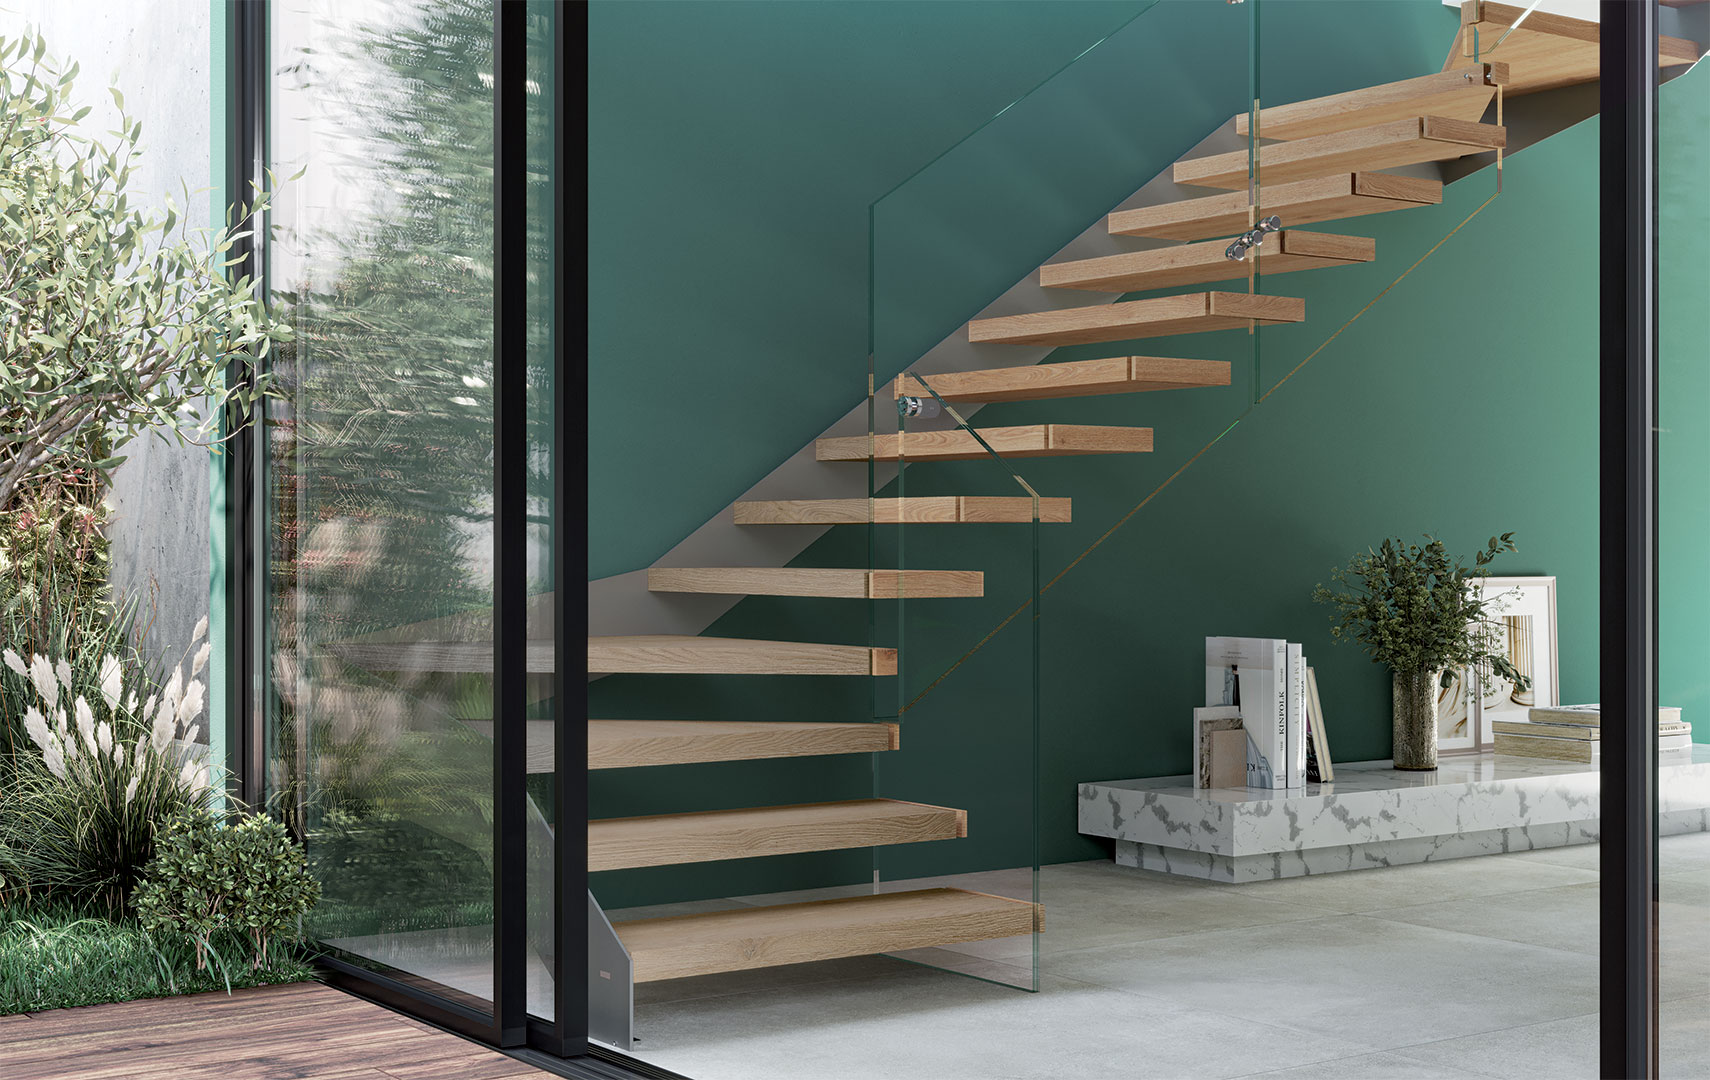 Rexal Mono XR, Escalier moderne, escalier en verre